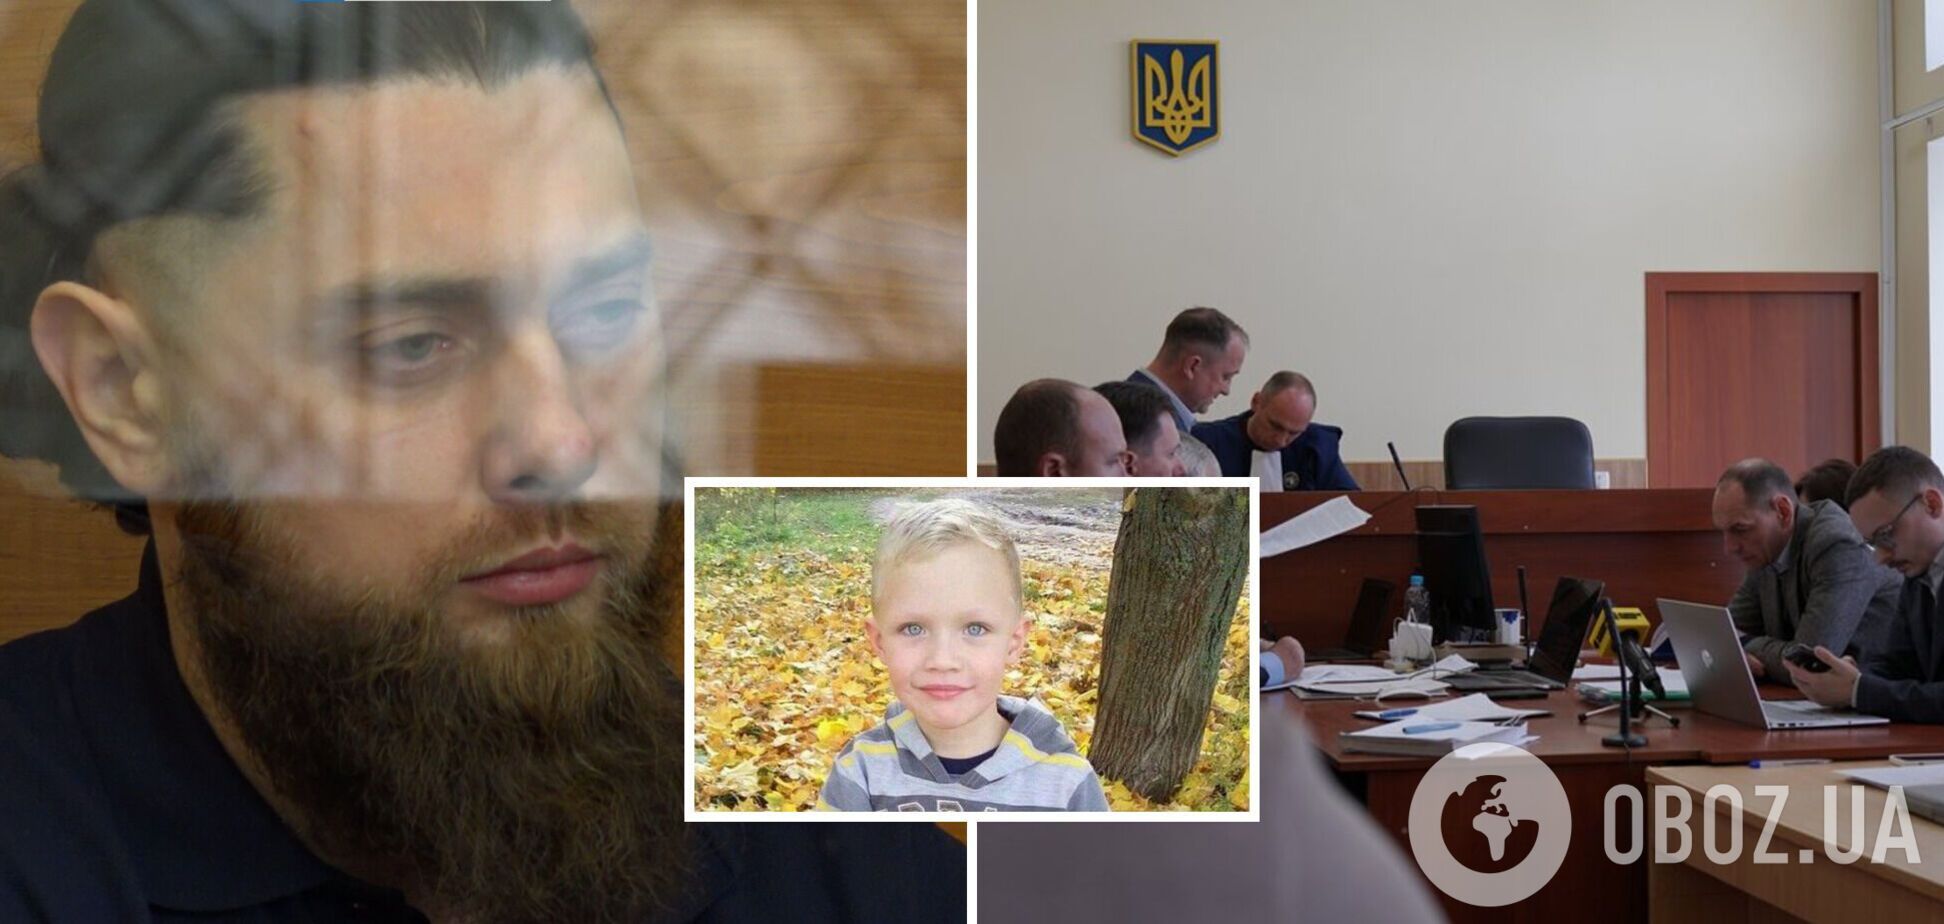 Троих оправдали, один получил срок: суд вынес приговоры по делу об убийстве пьяными копами 5-летнего Кирилла Тлявова